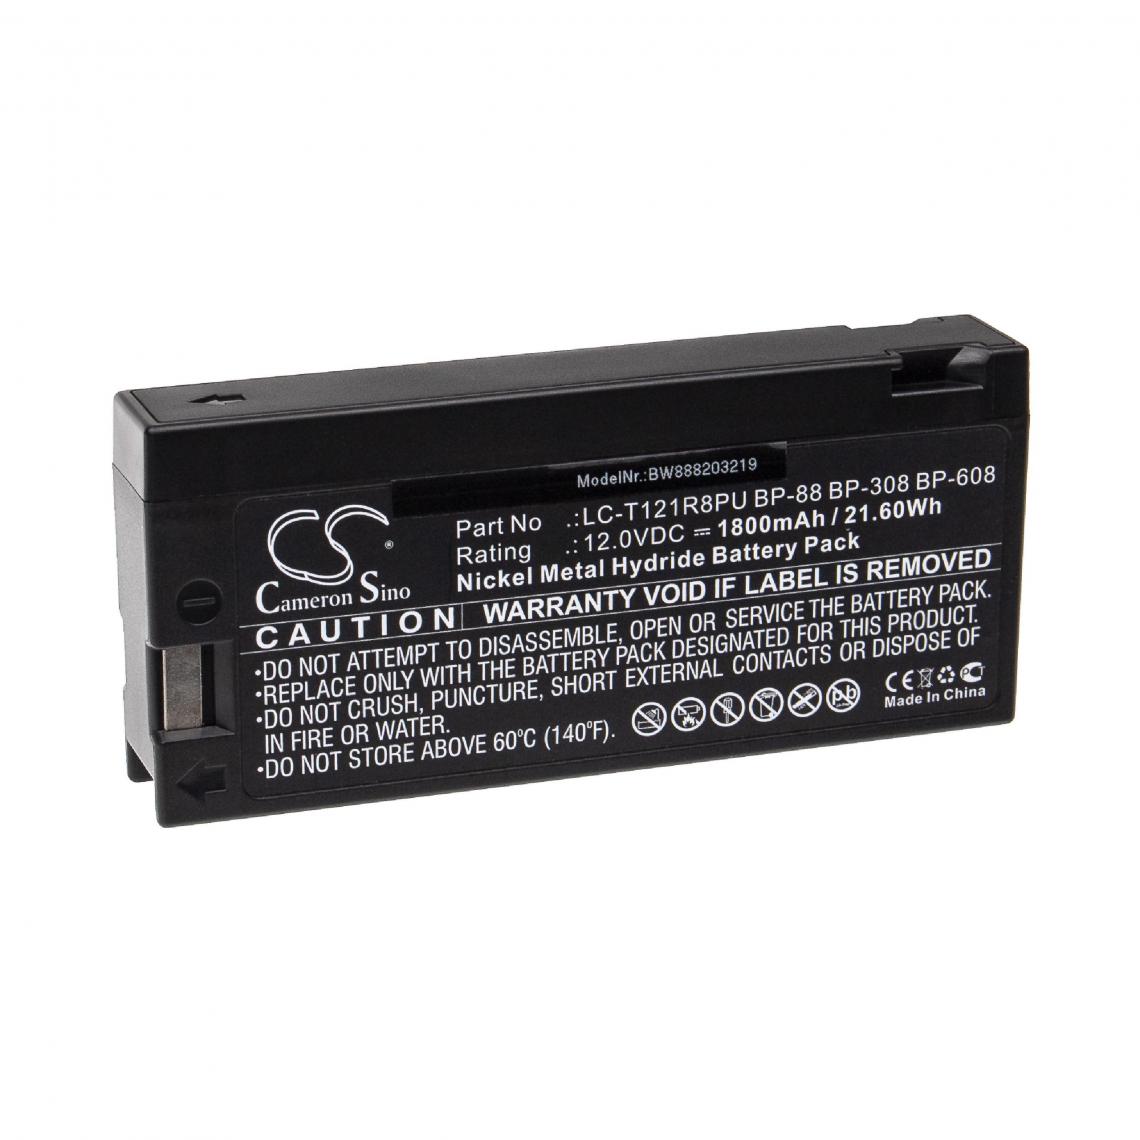 Vhbw - vhbw Batterie compatible avec GE CG9906, CG9907, CG9908, CG9910, CG9911, GFX PL1220 appareil médical (1800mAh, 12V, NiMH) - Piles spécifiques